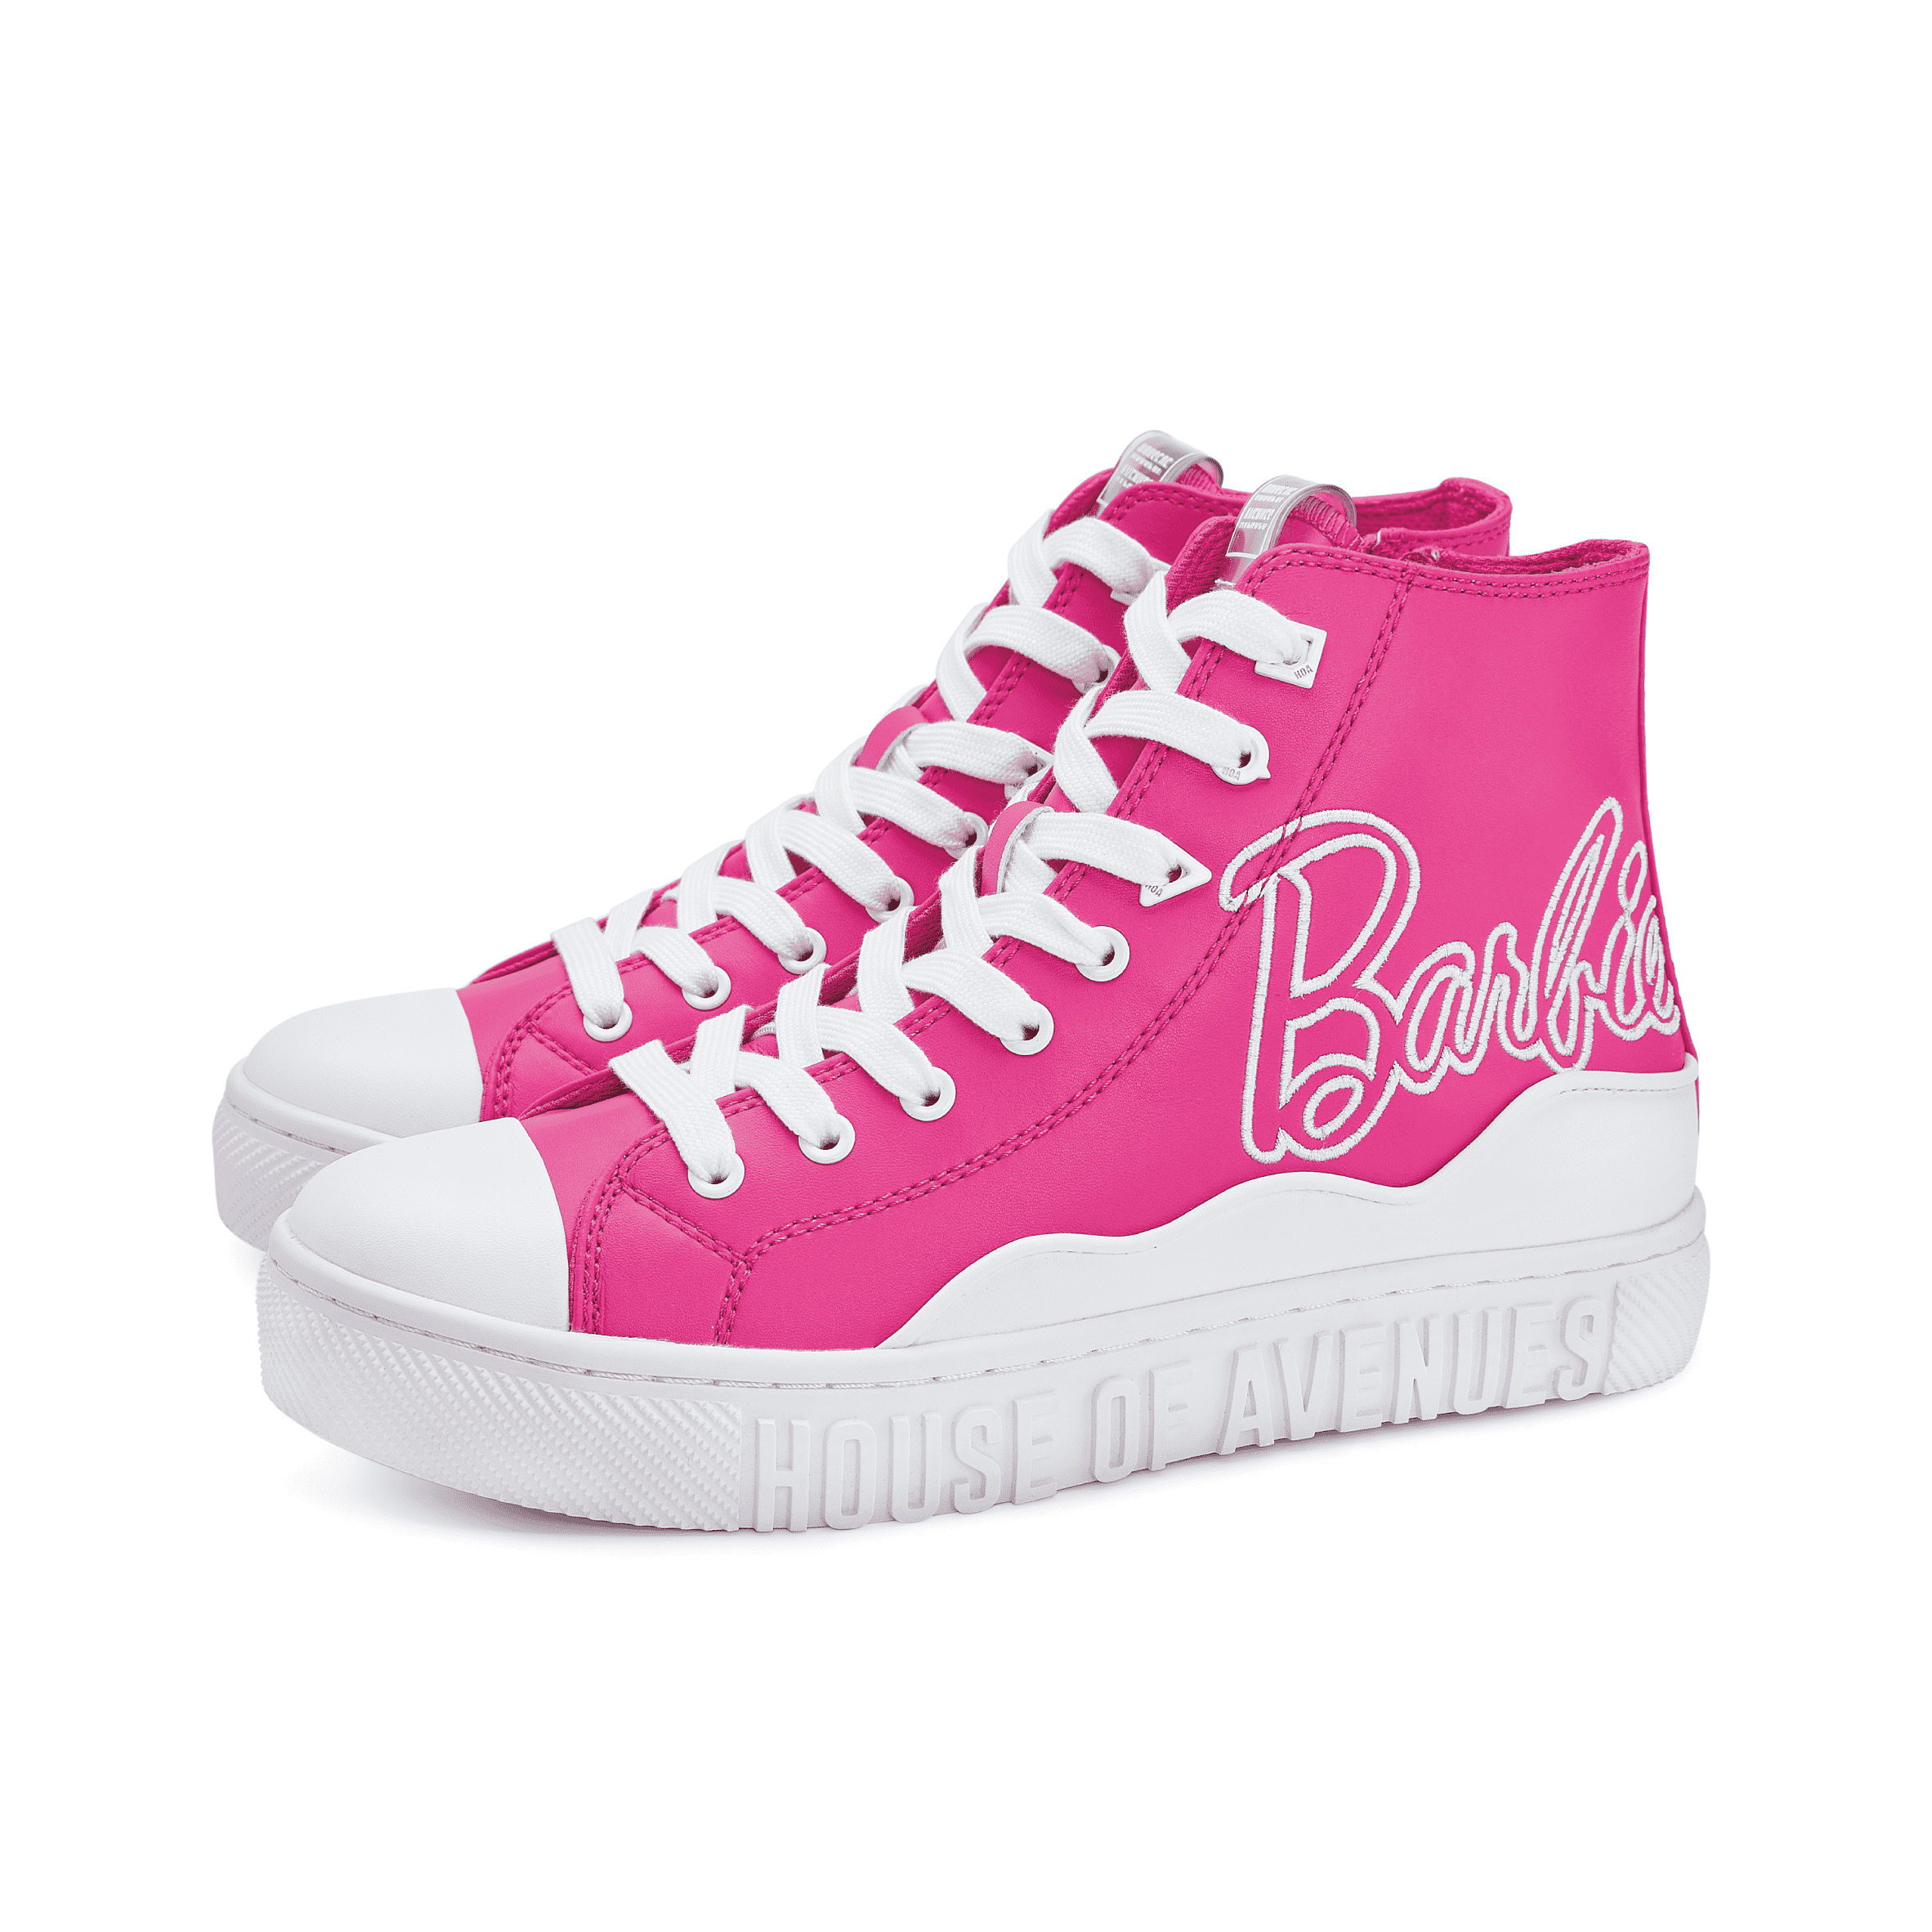 Barbie x House Of Avenues Ladies High Top Sneaker 5529 Pink